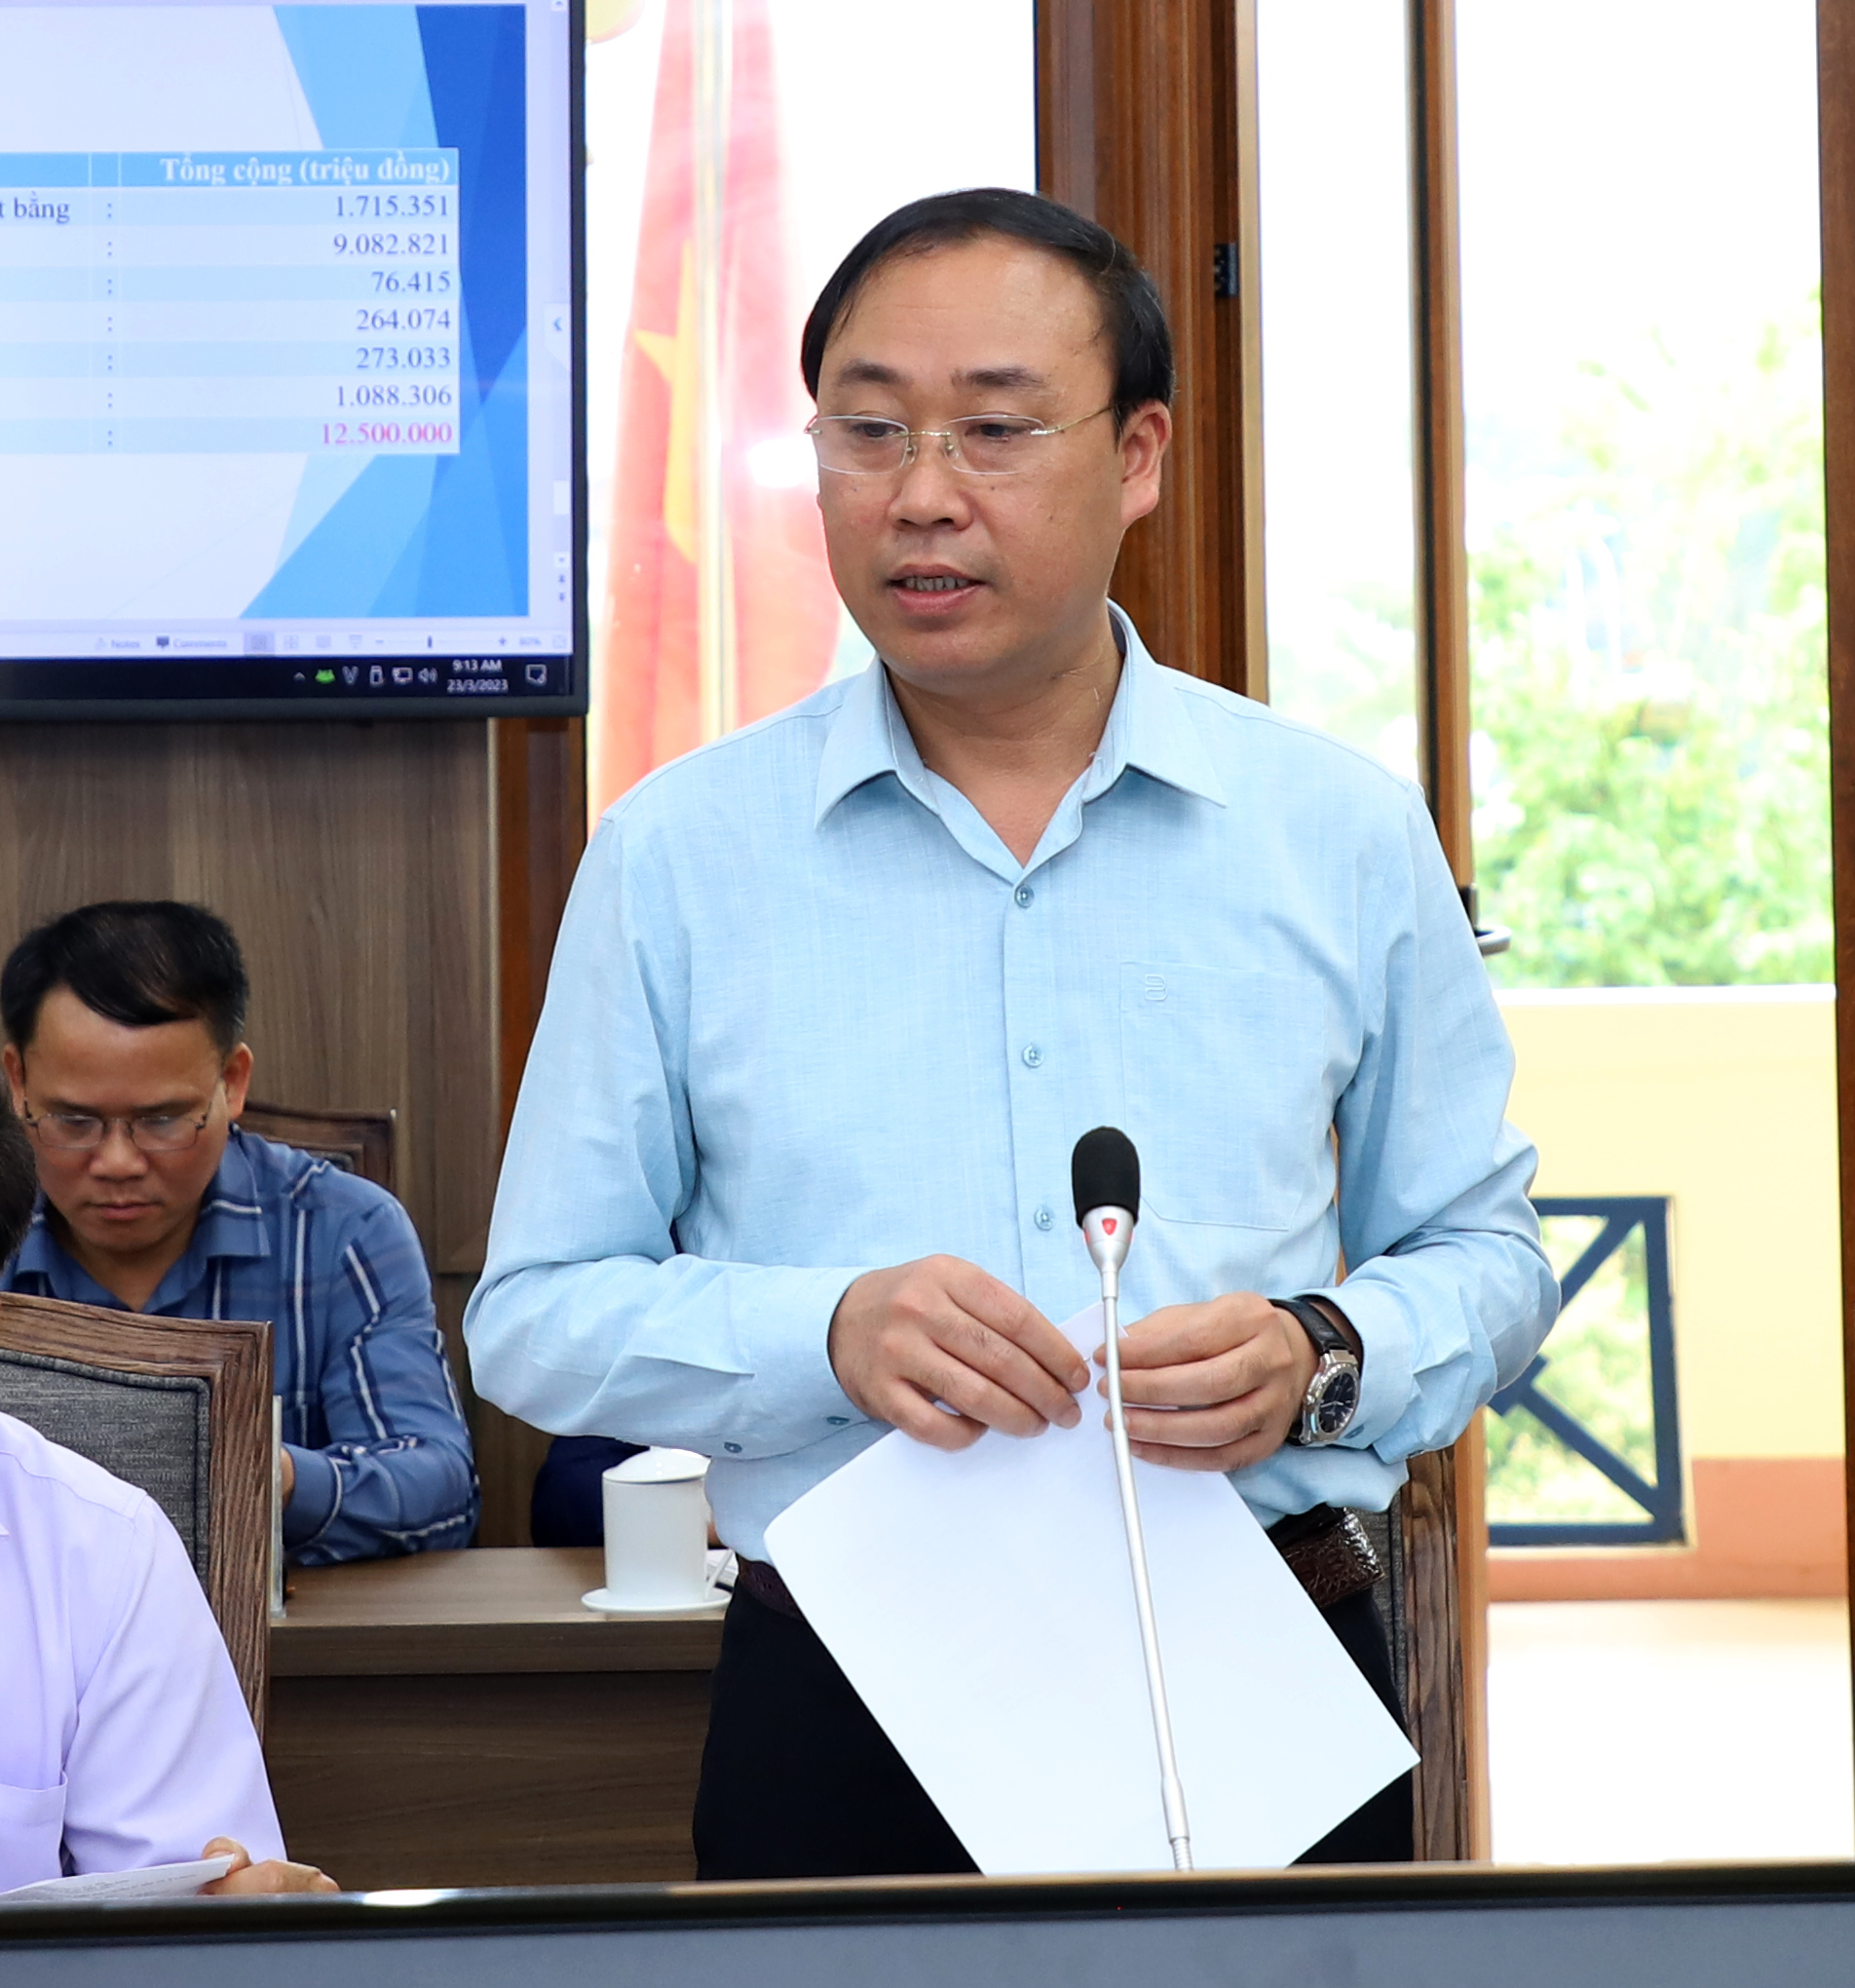 Giám đốc Sở Nội vụ Nguyễn Cao Cường đề nghị huyện Vị Xuyên quan tâm quản lý cán bộ, biên chế và công tác quy hoạch, bổ nhiệm, bổ nhiệm lại cán bộ theo đúng quy trình; đẩy mạnh cải cách hành chính và chuyển đổi số.